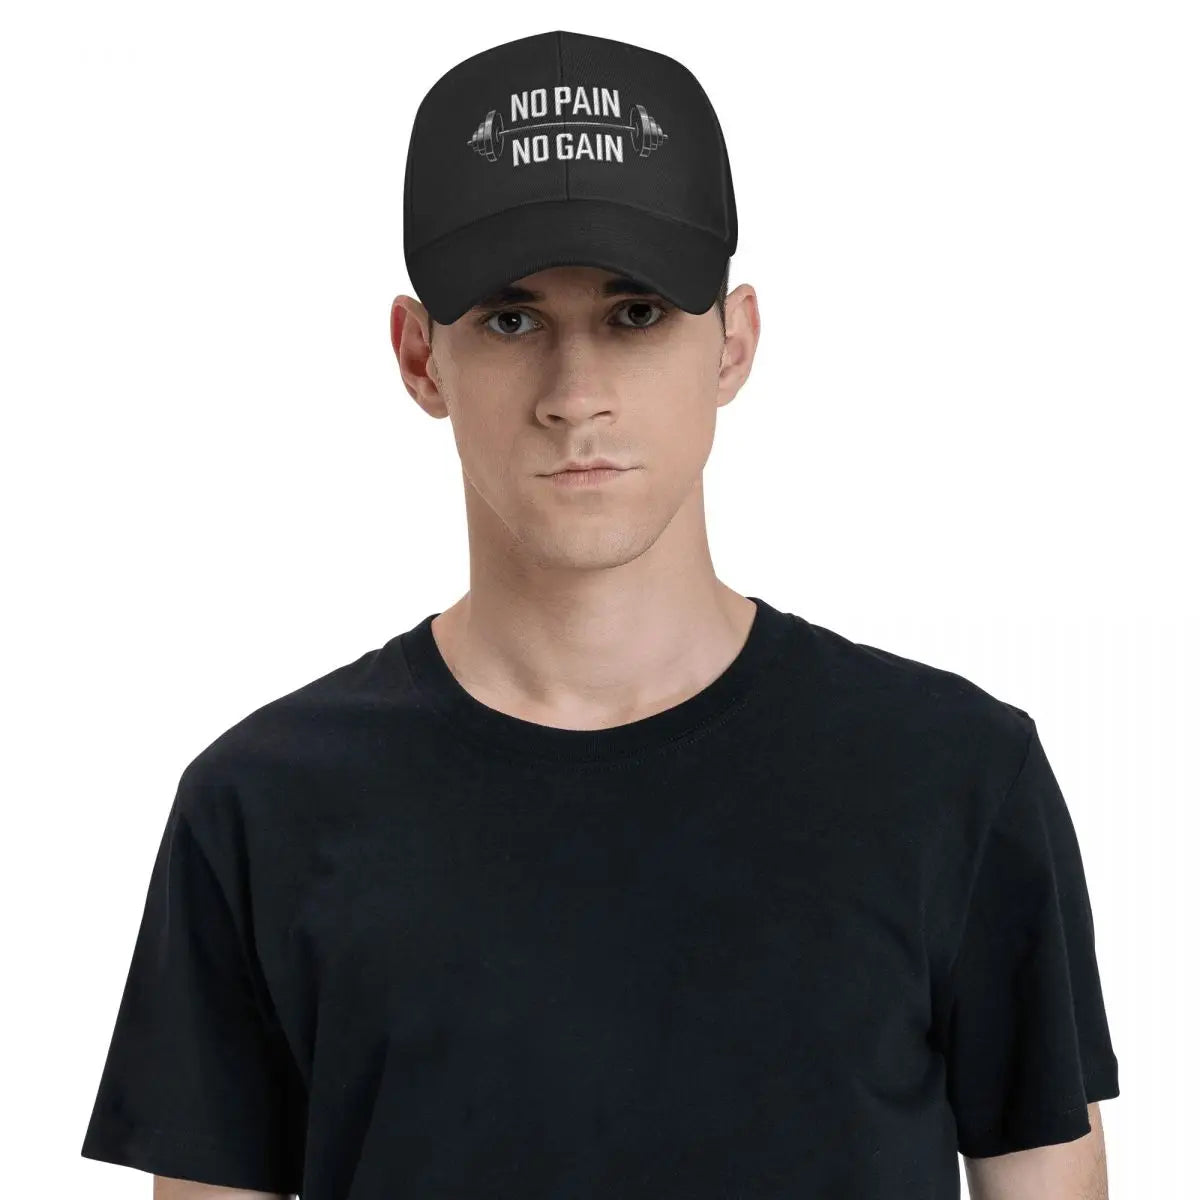 "NO PAIN NO GAIN" Gym Hat (UNISEX)